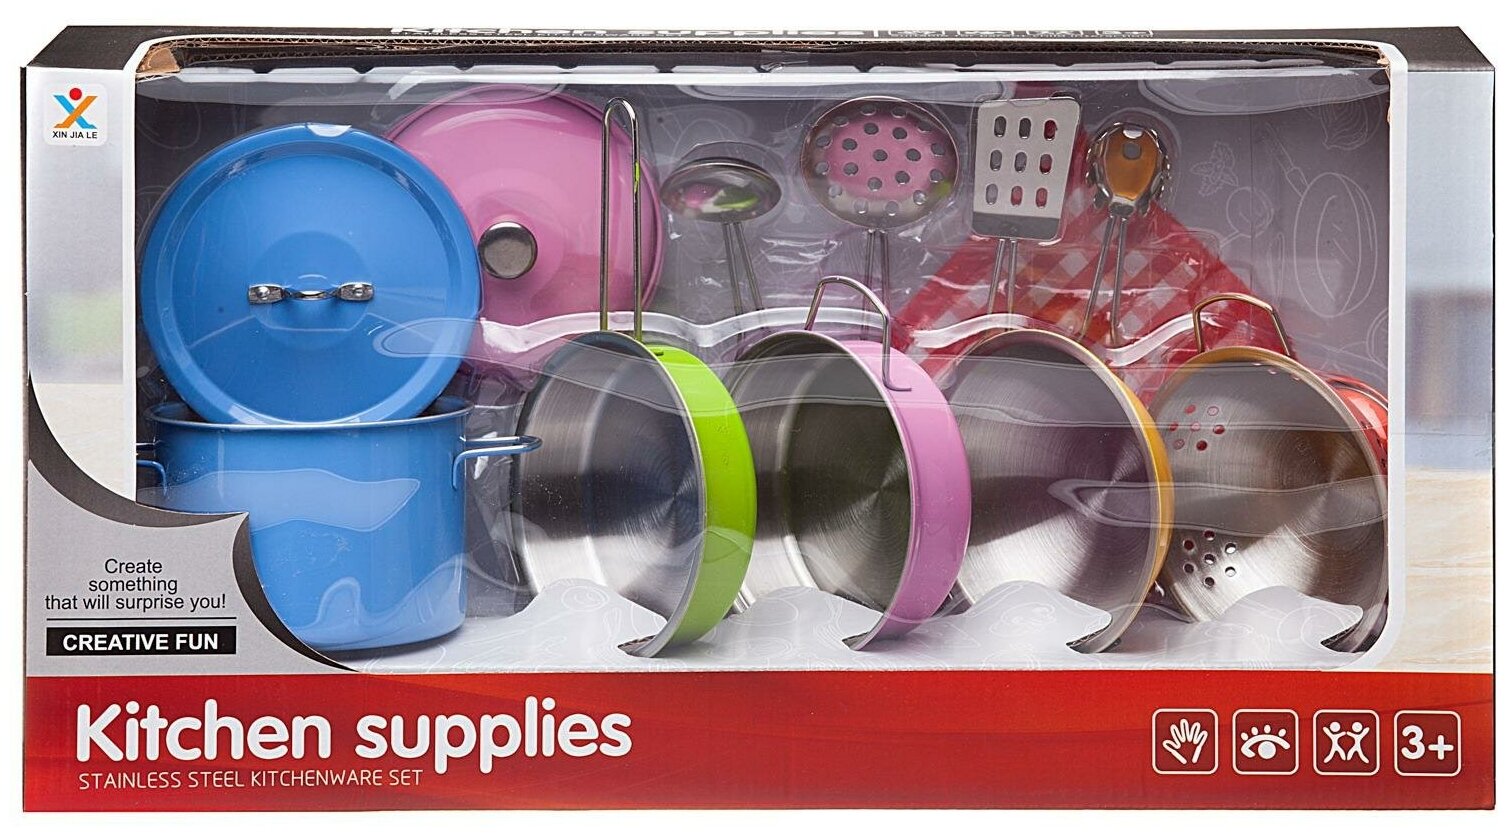 Игровой набор Junfa Посуда металлическая (разноцветная), в наборе 12 предметов WK-14810